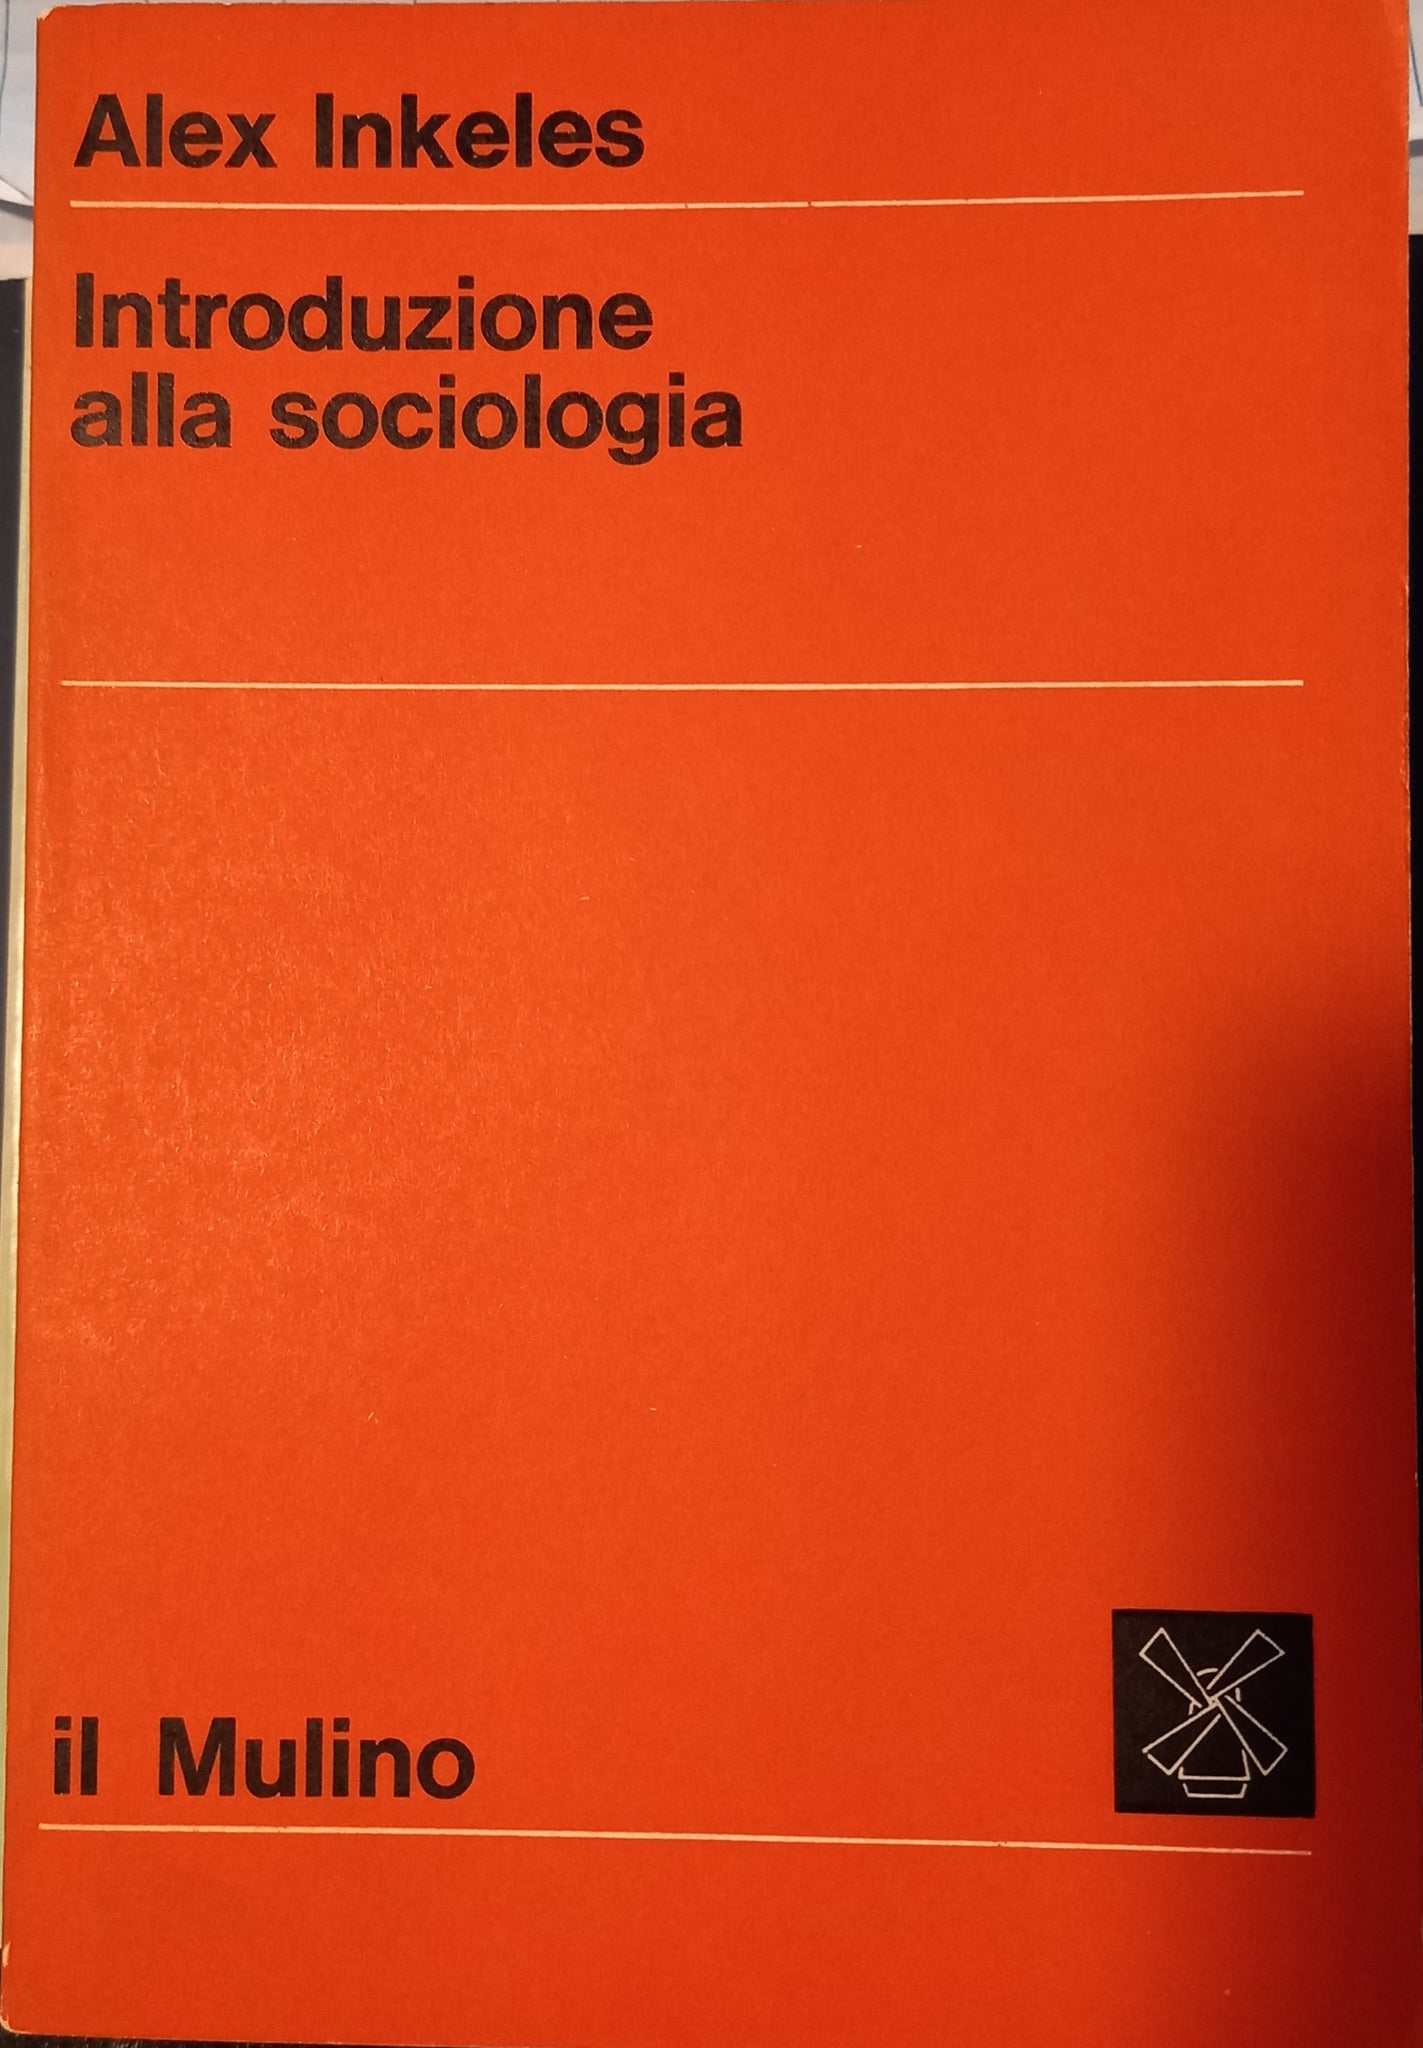 Introduzione alla sociologia